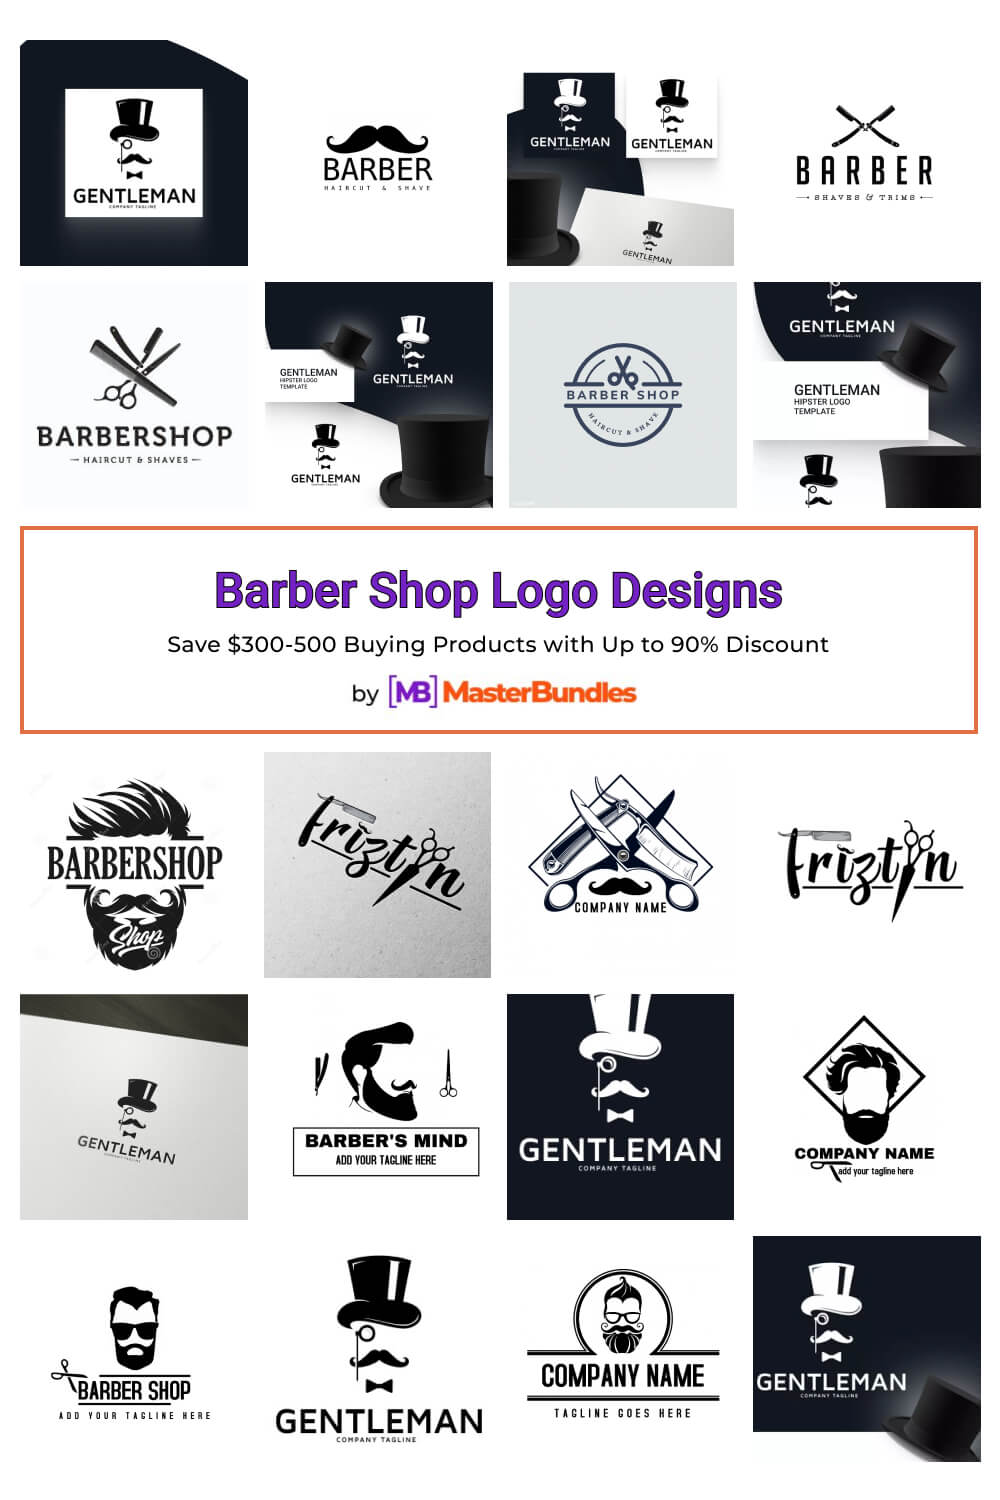 barber shop logo designs pinterest image.